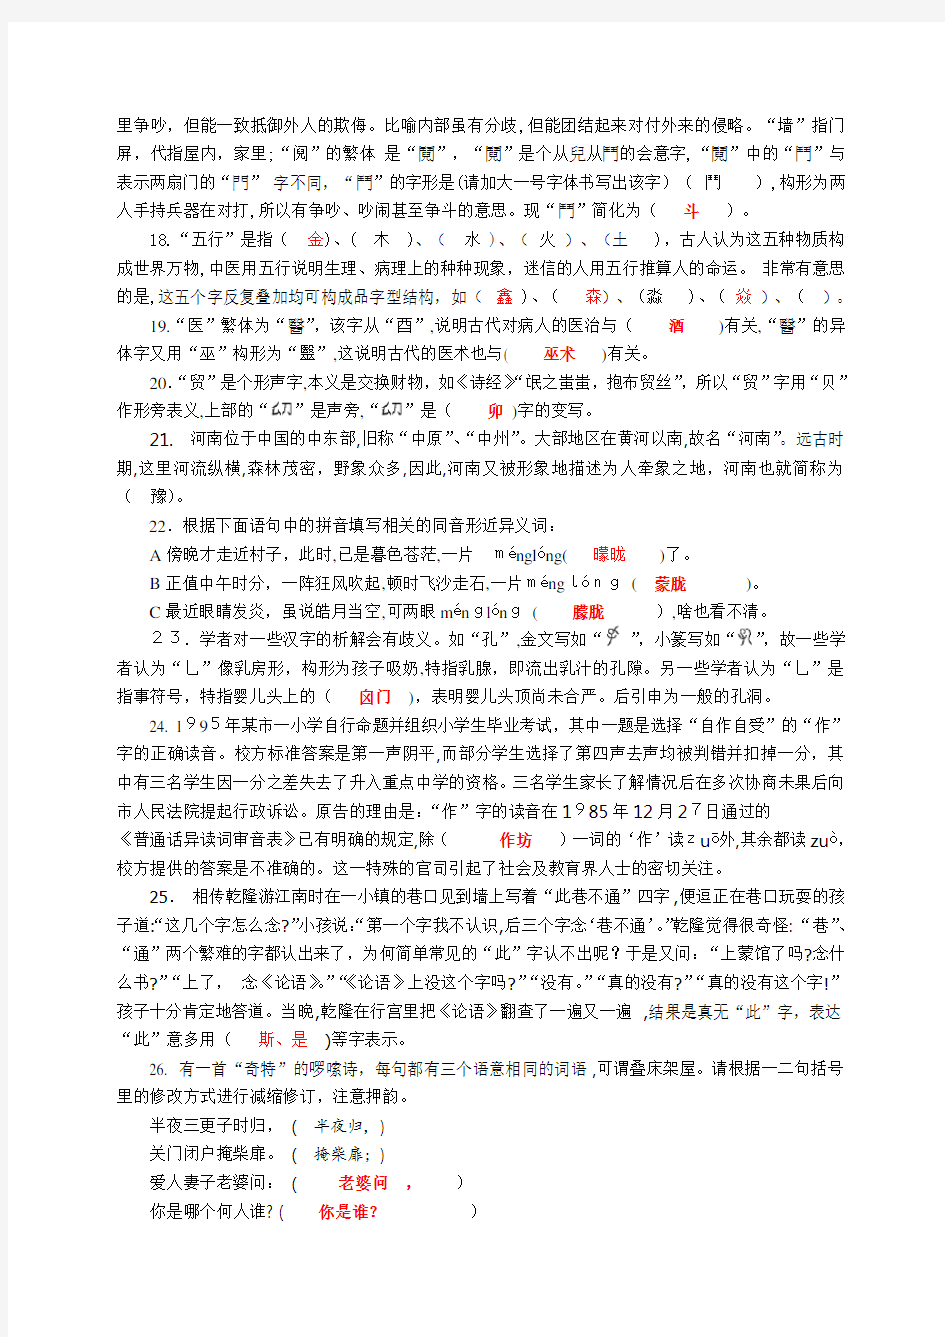 全国第五届汉字知识竞赛卷及标准答案(8K卷)